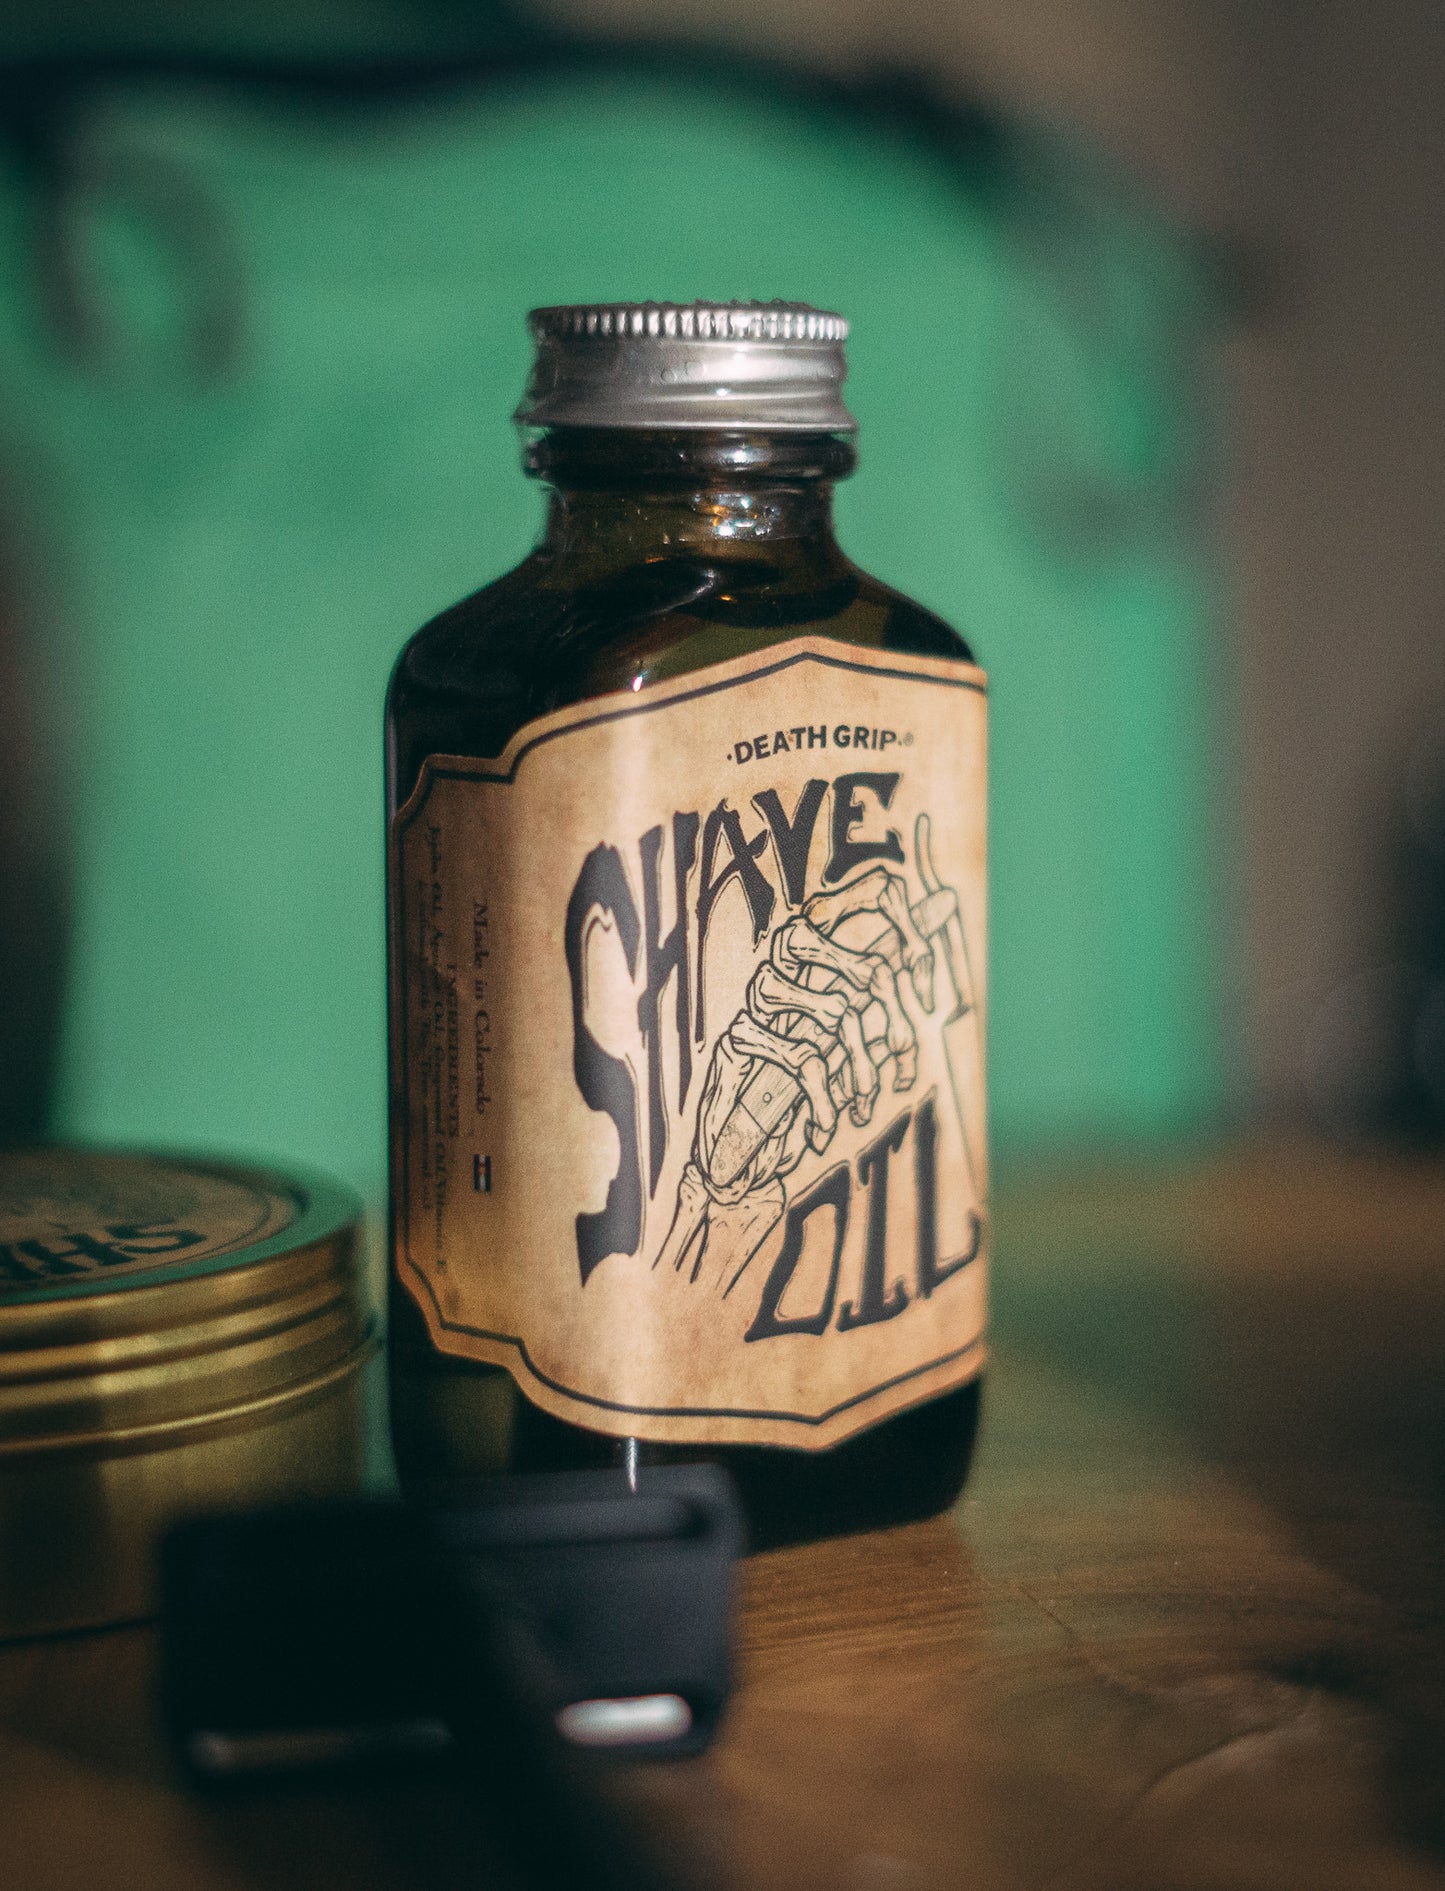 Vintage All-Natural Shave Oil, Tea Tree (3oz)